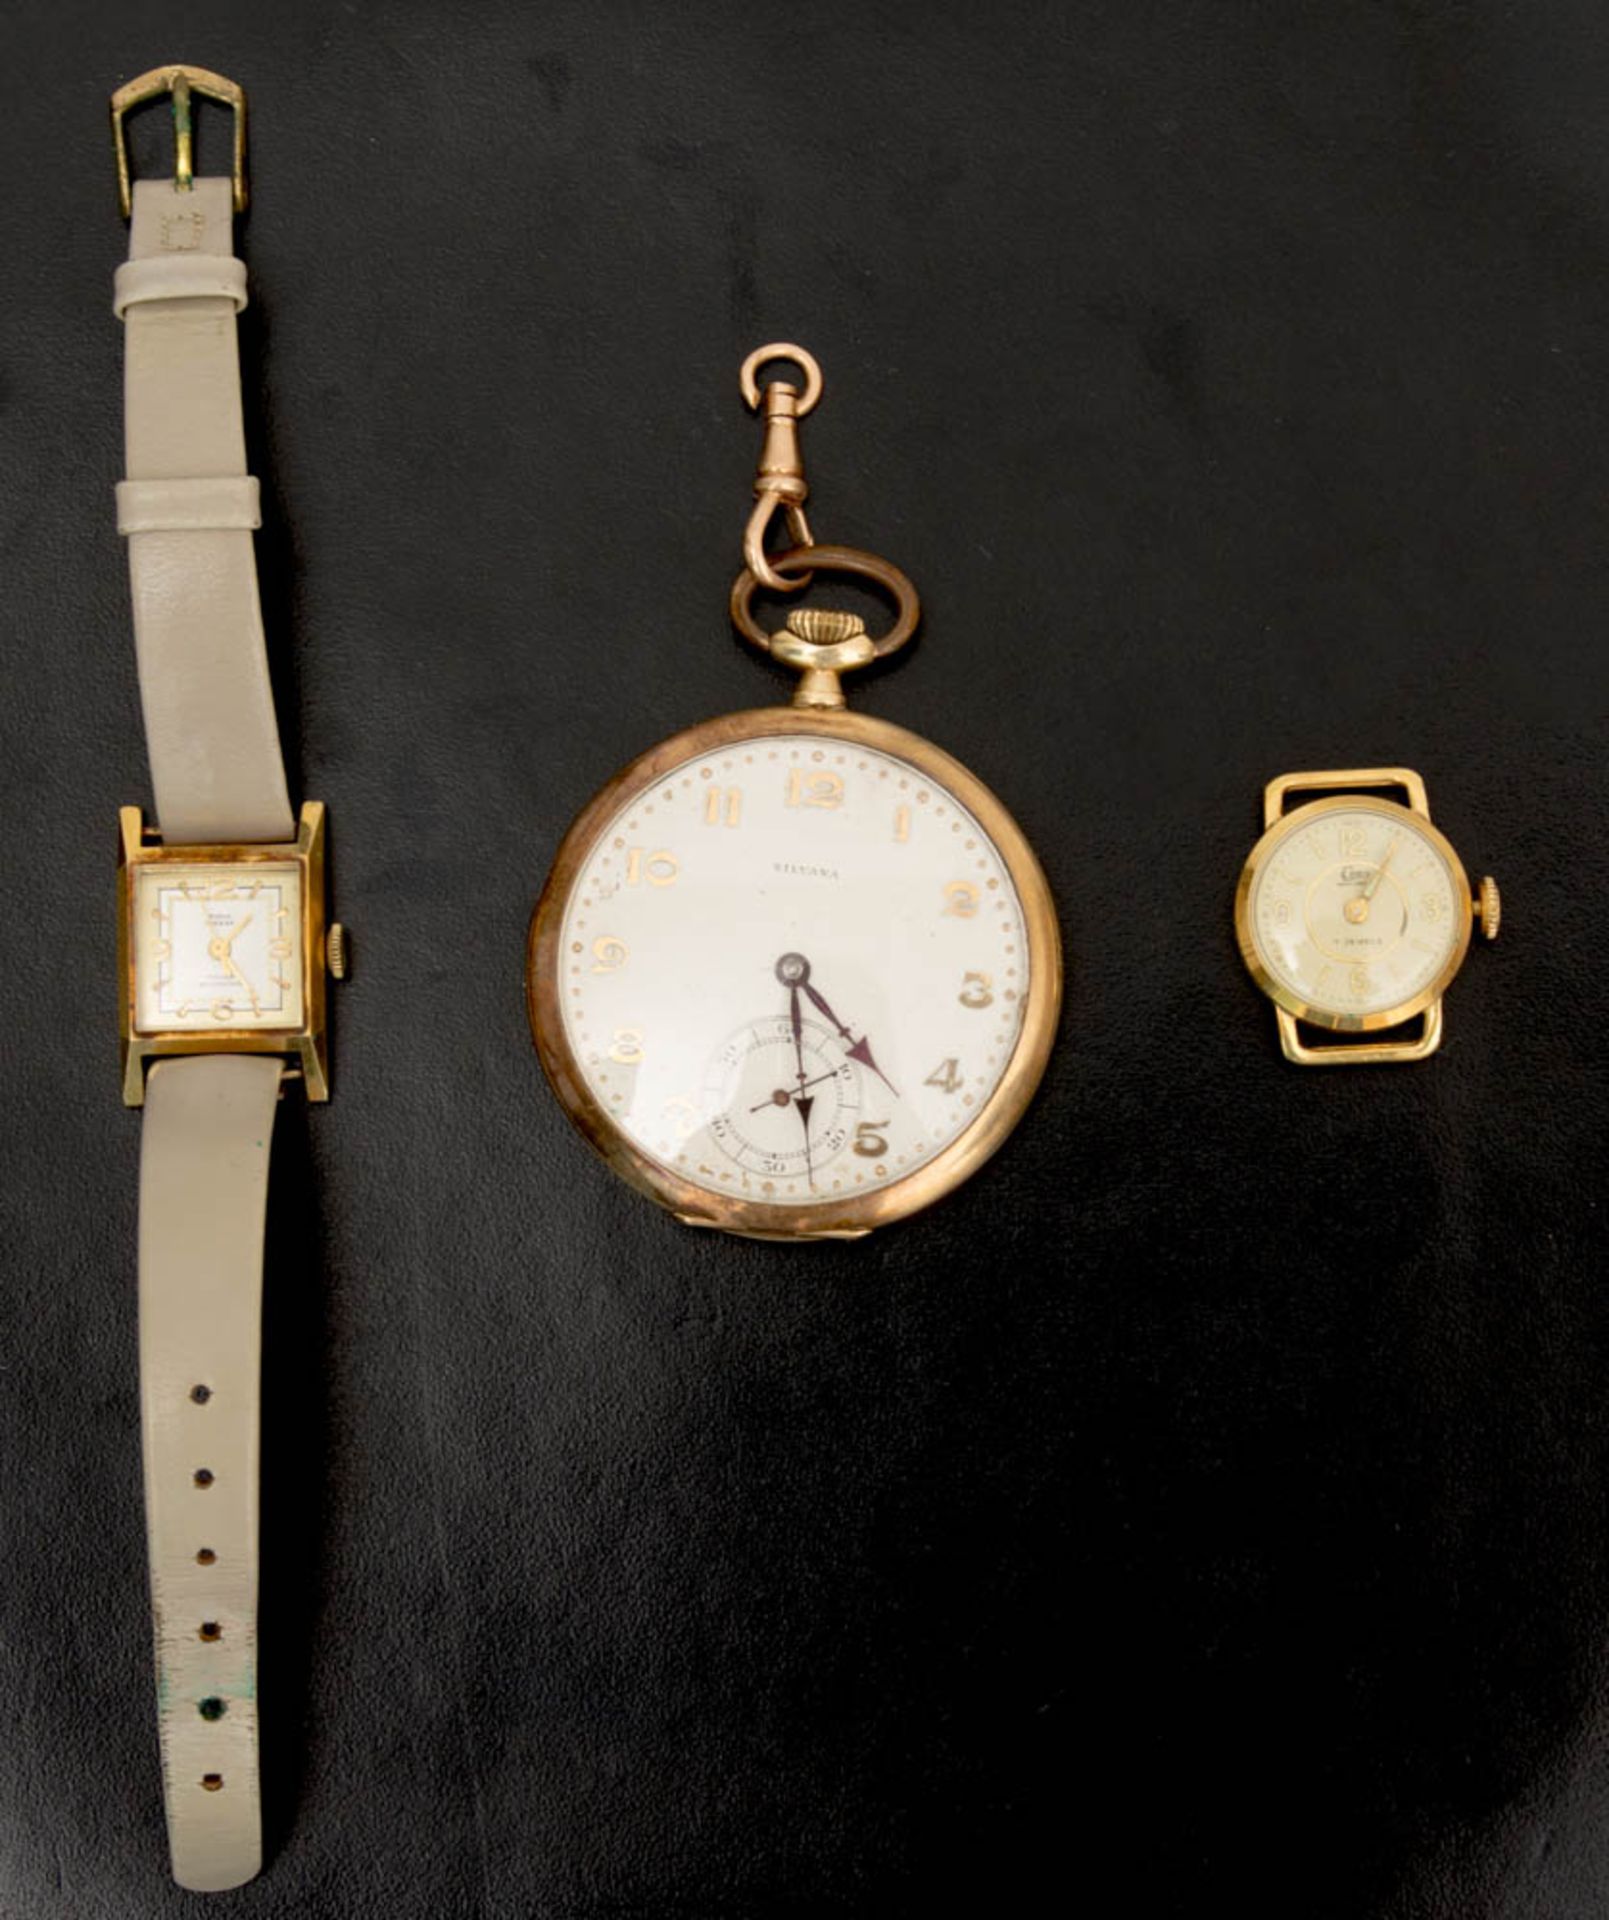 Konvolut von Taschen- und Armbanduhren.Bestehend aus:Damenarmbanduhr PARA KLASSE, Serie 17 Rubis, 14